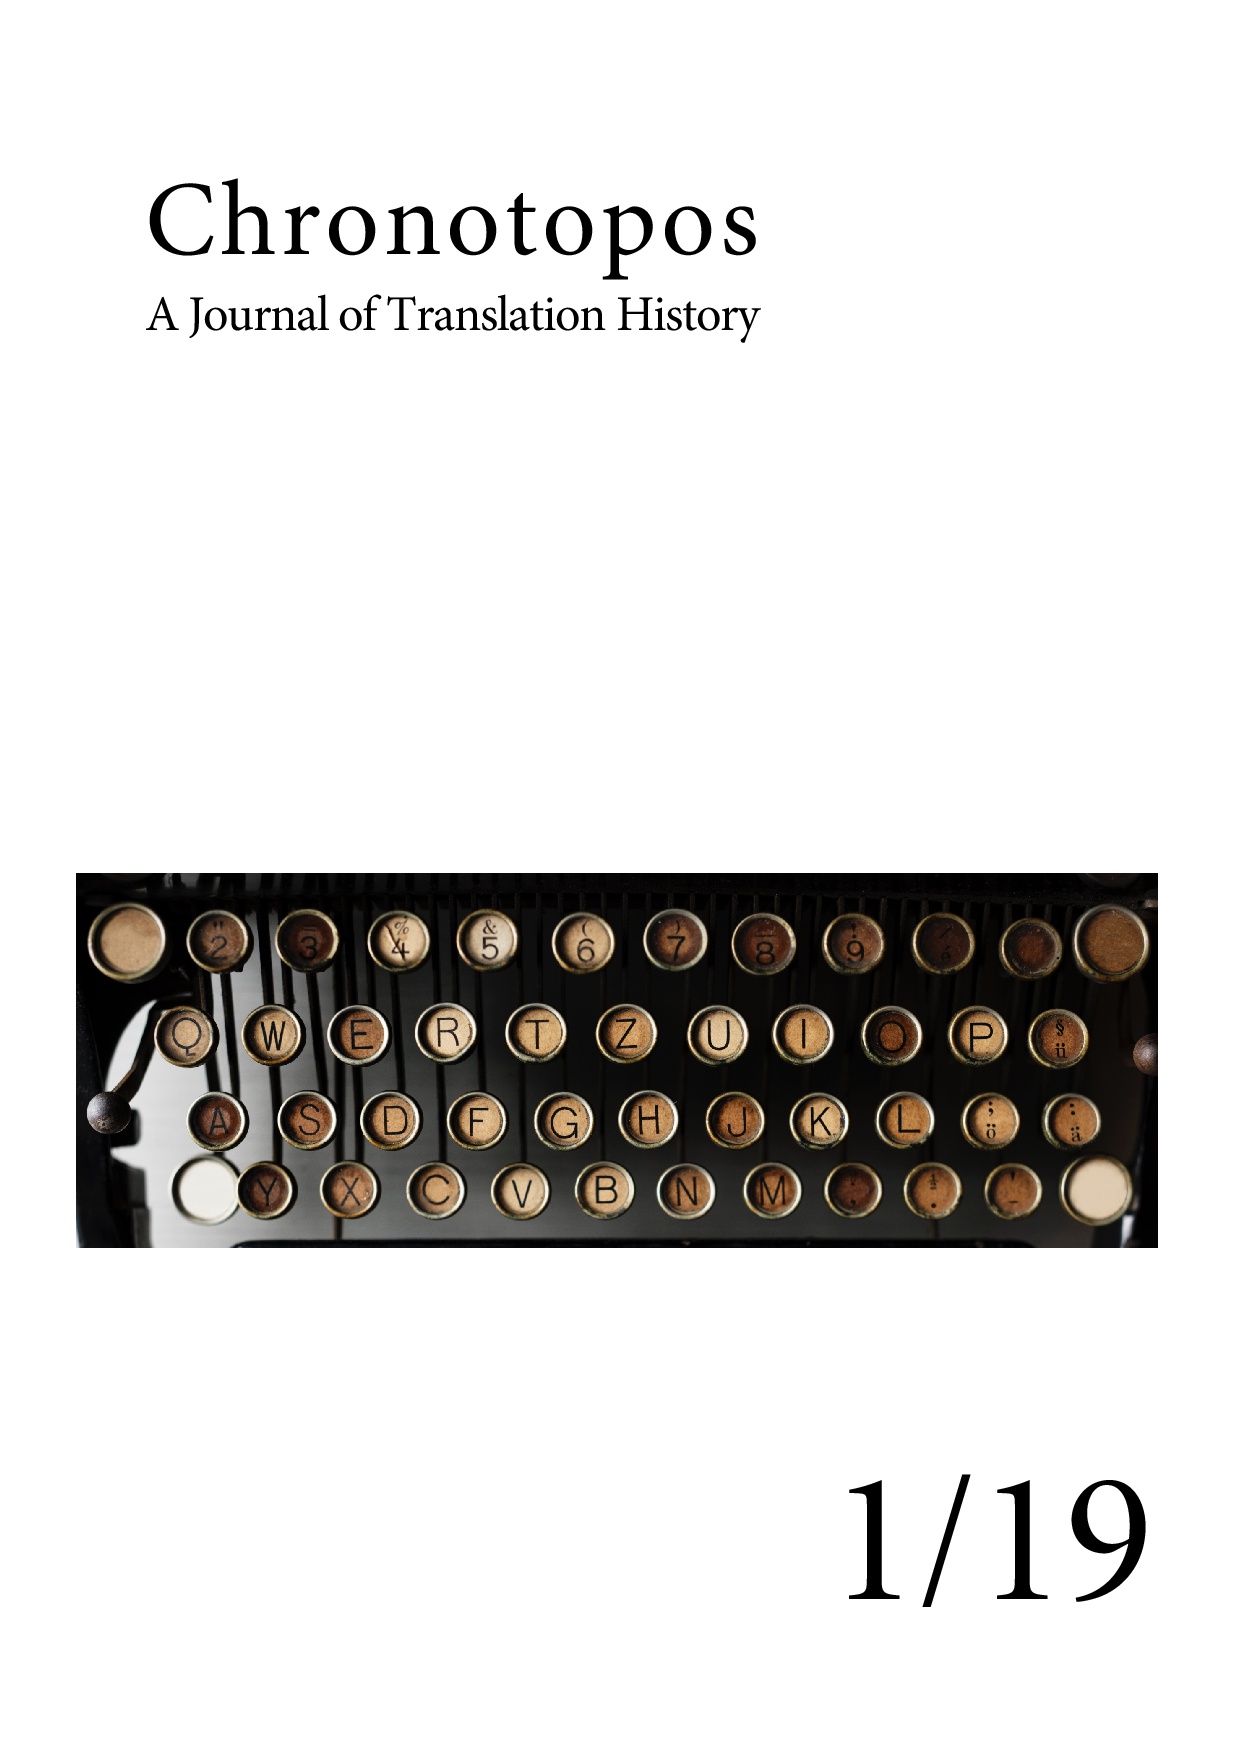 Cover der ersten Ausgabe